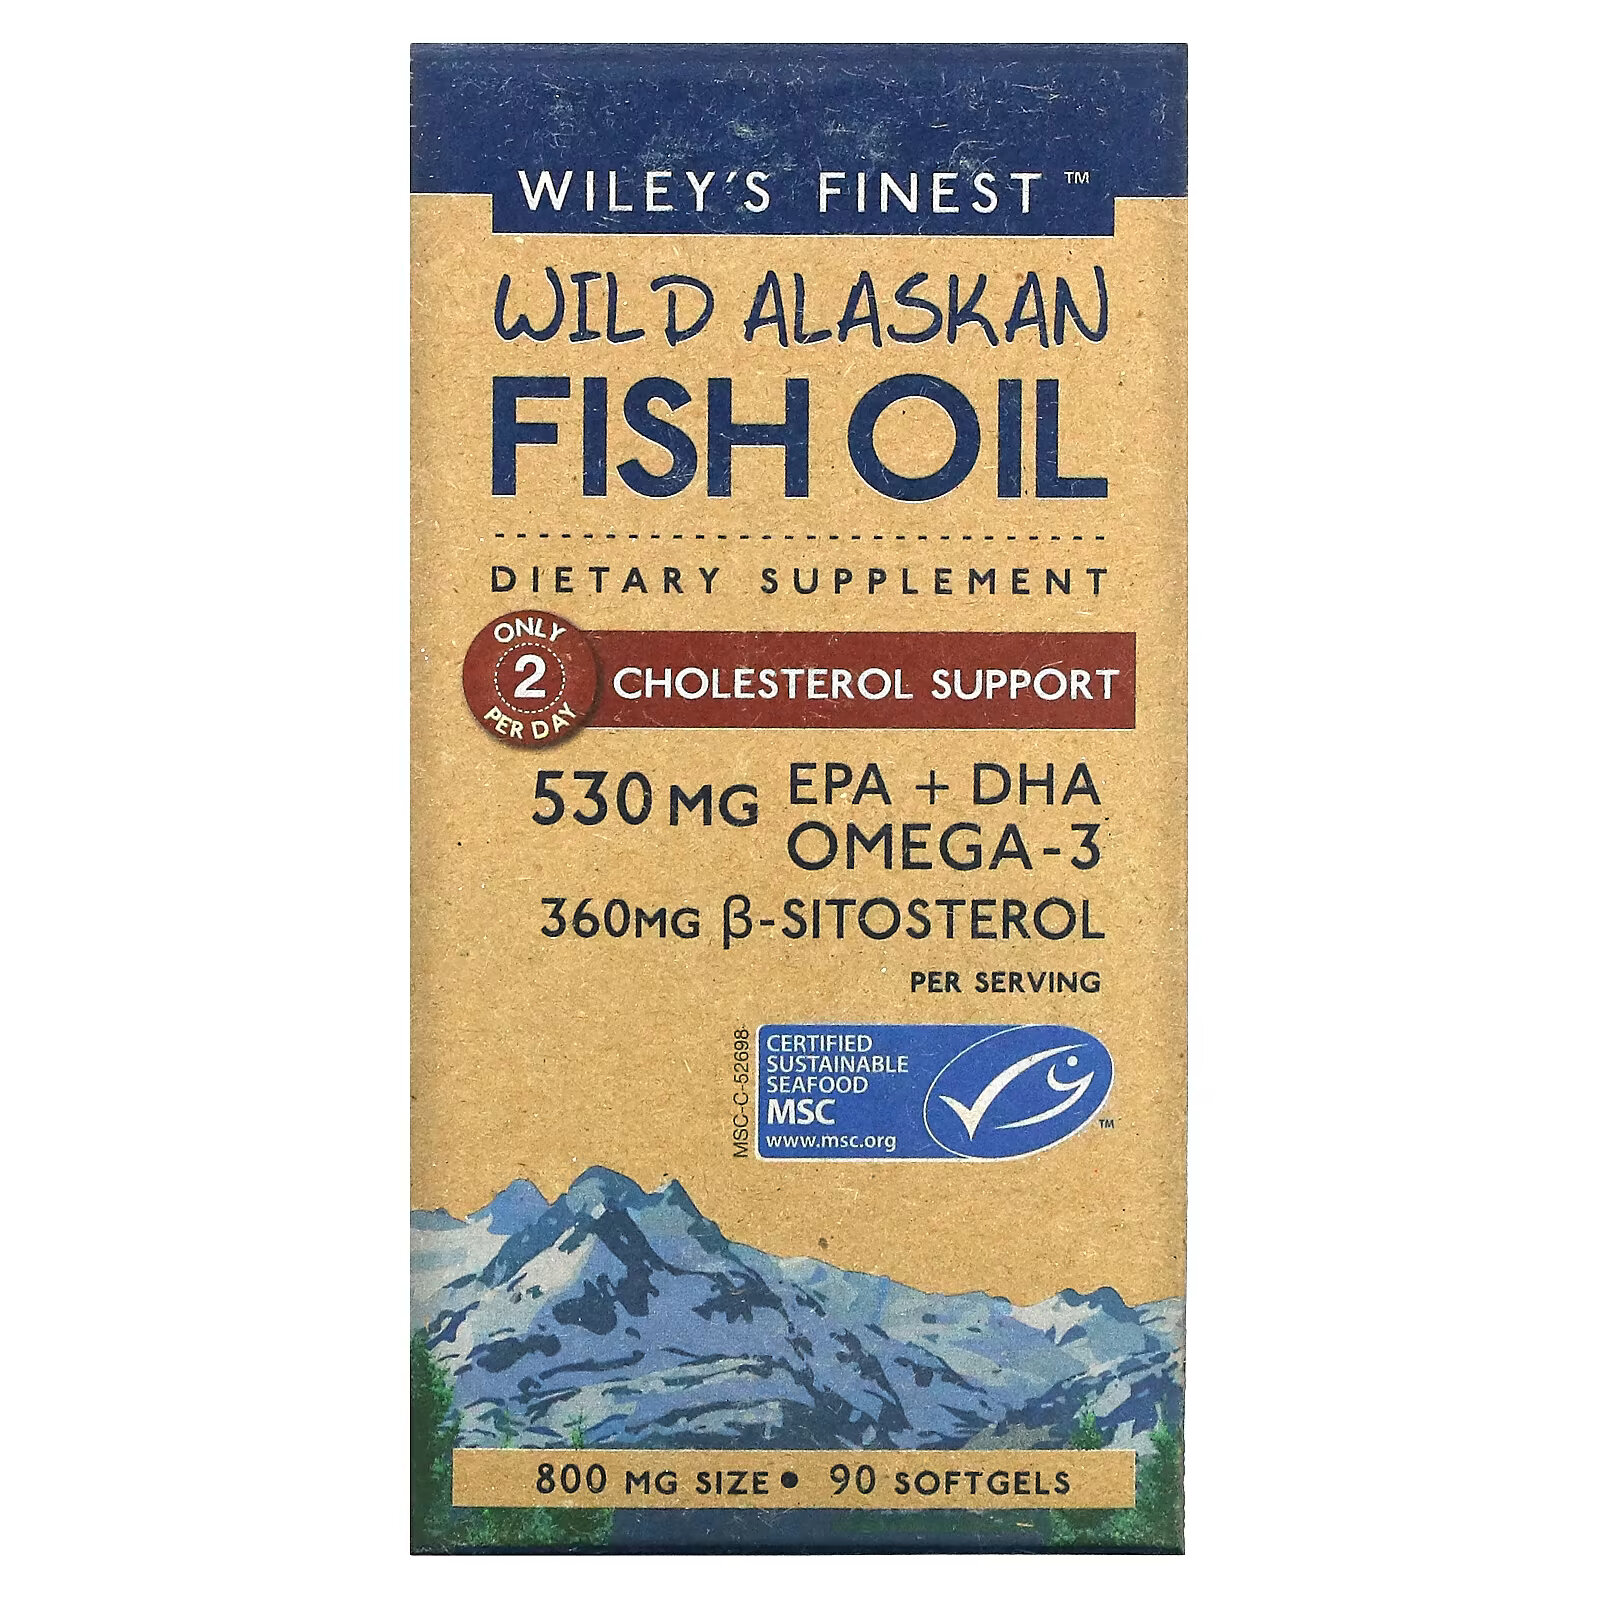 21st century жир из дикой аляскинской рыбы мега омега 3 1950 мг 1350 мг 90 капсул покрытых кишечнорастворимой оболочкой Wiley's Finest, жир дикой аляскинской рыбы, холестериновая поддержка, 800 мг, 90 капсул